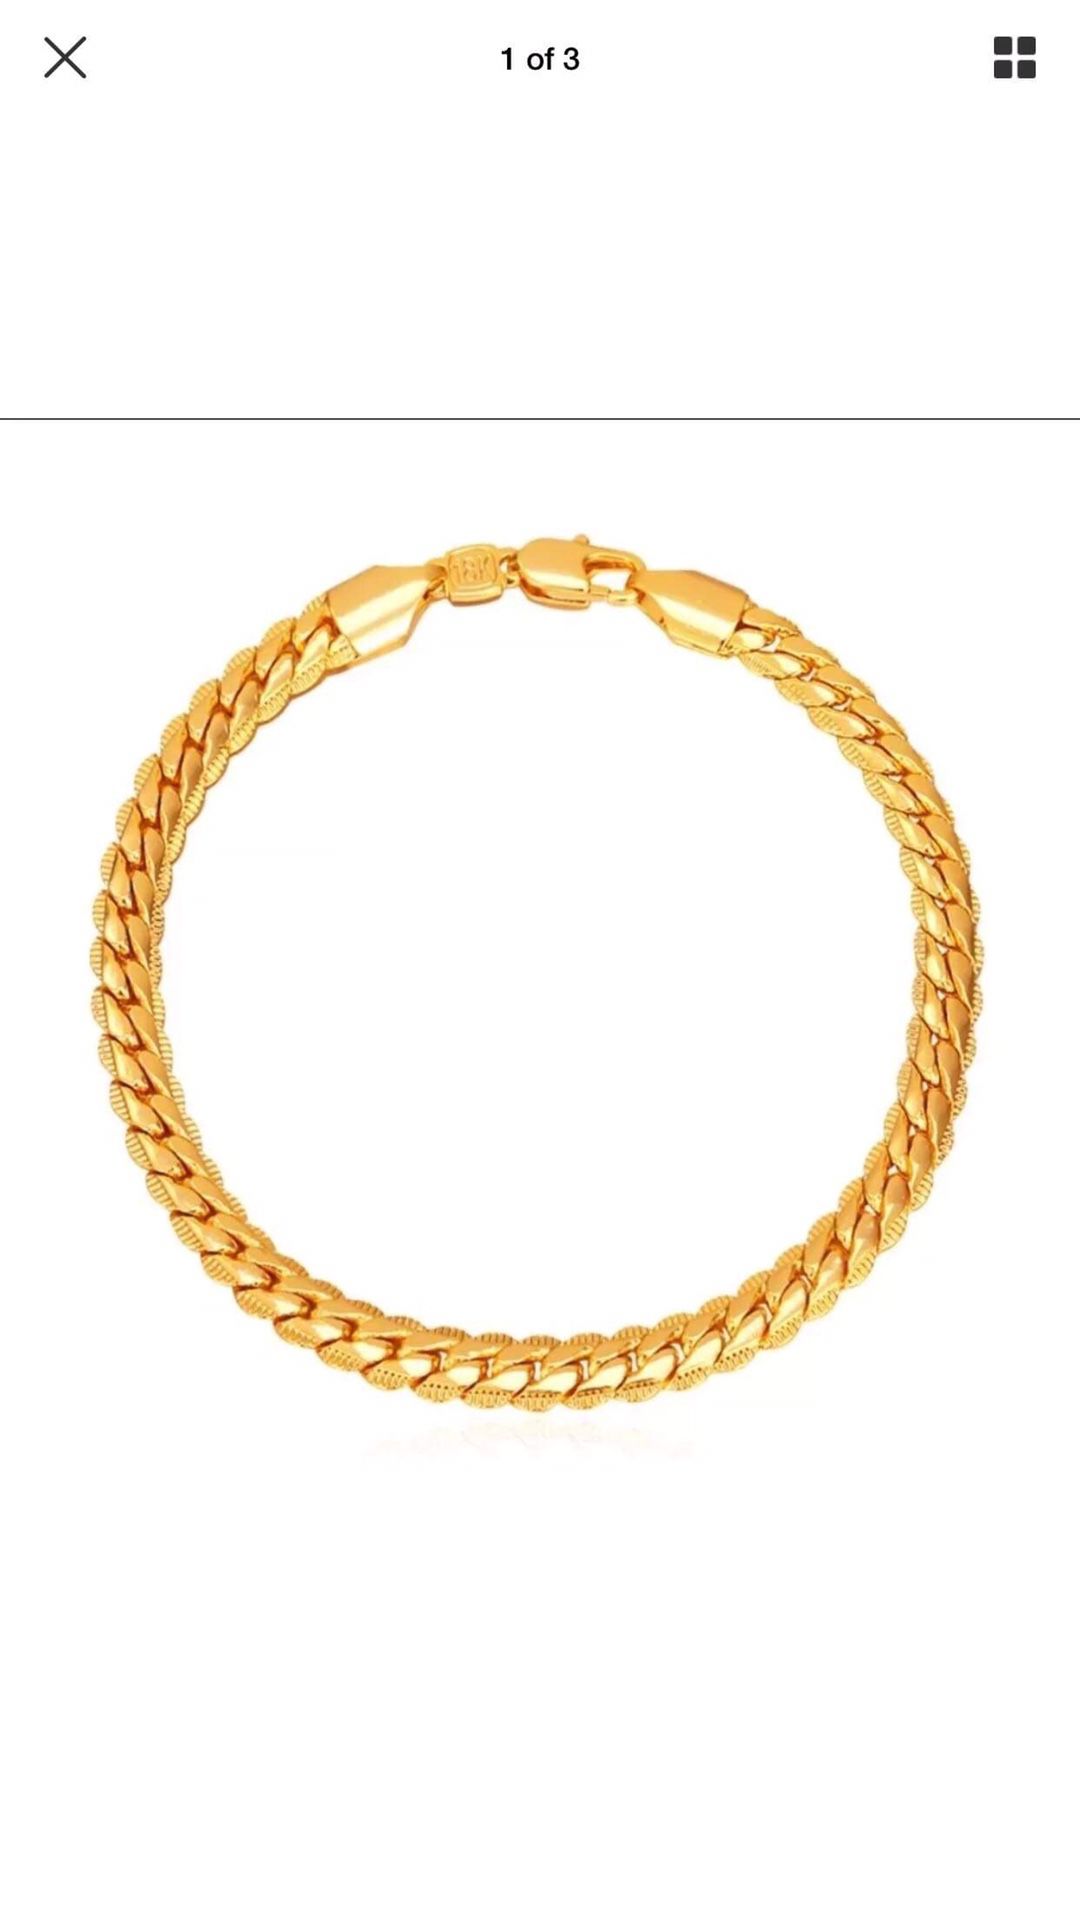 Gold plated bracelet 18k stamped